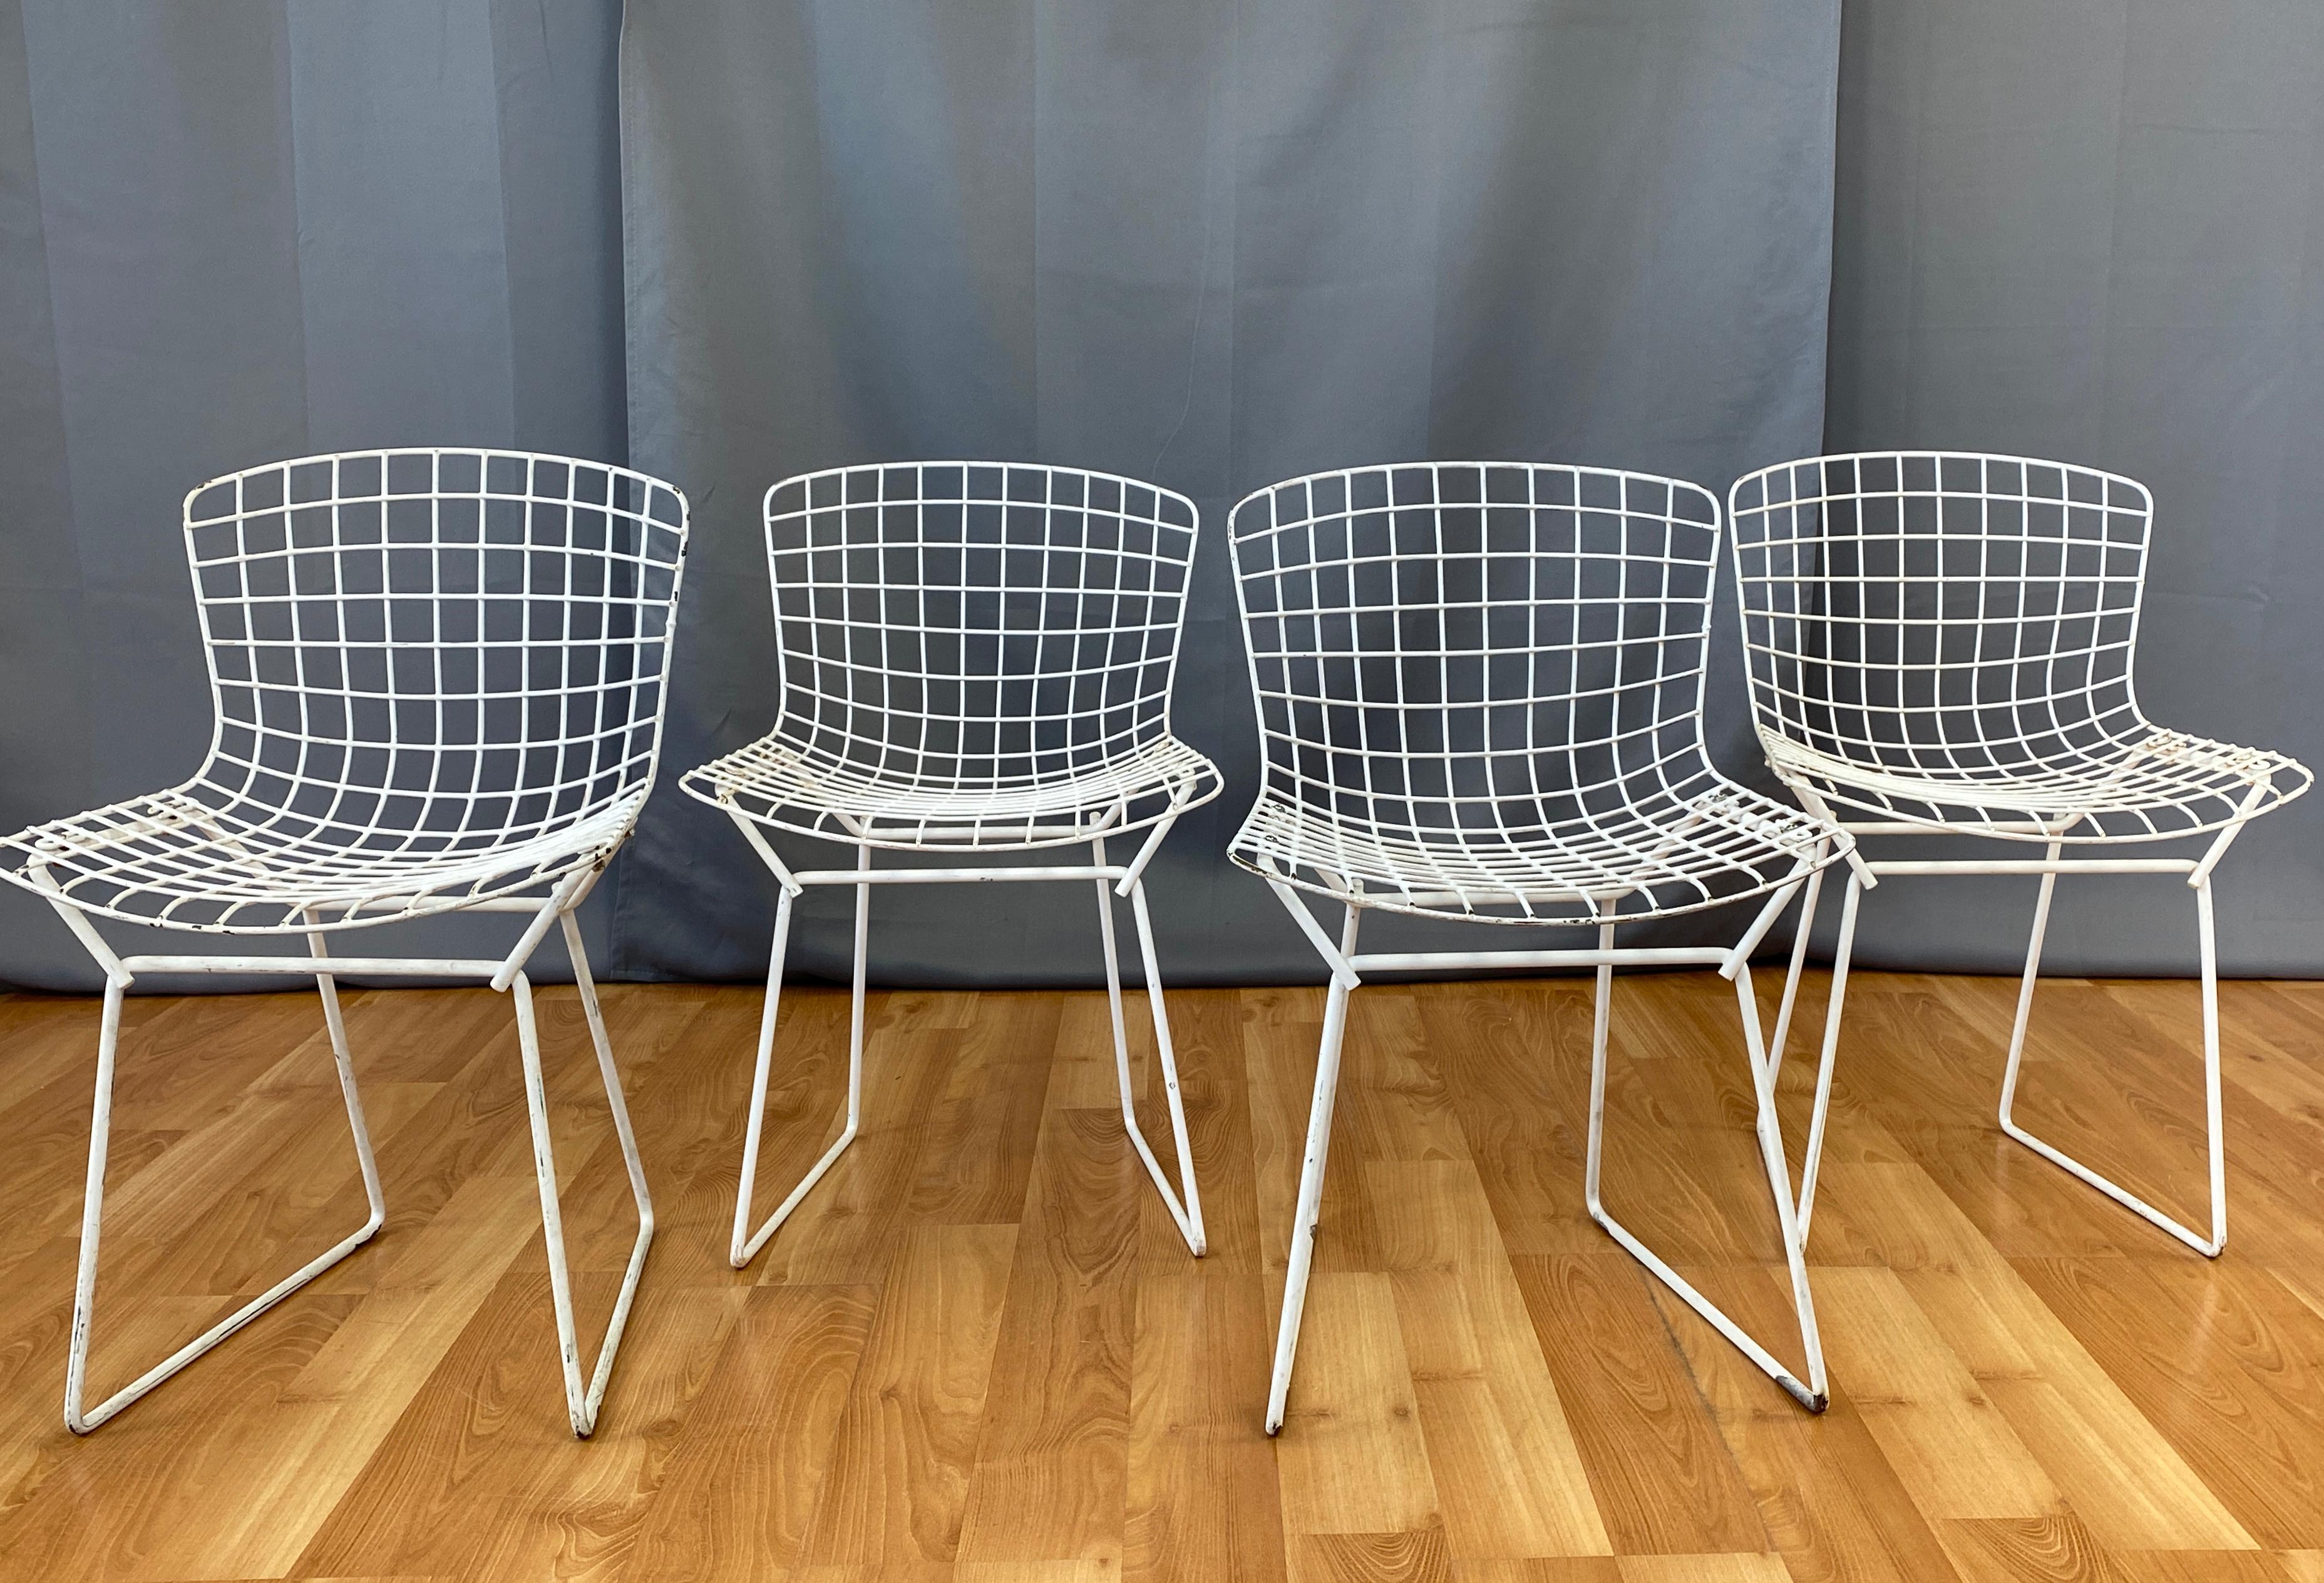 Harris présente quatre chaises d'enfant conçues par Harry Bertoia pour Knoll.
Conçu pour la première fois en 1950. Tous sont blancs.